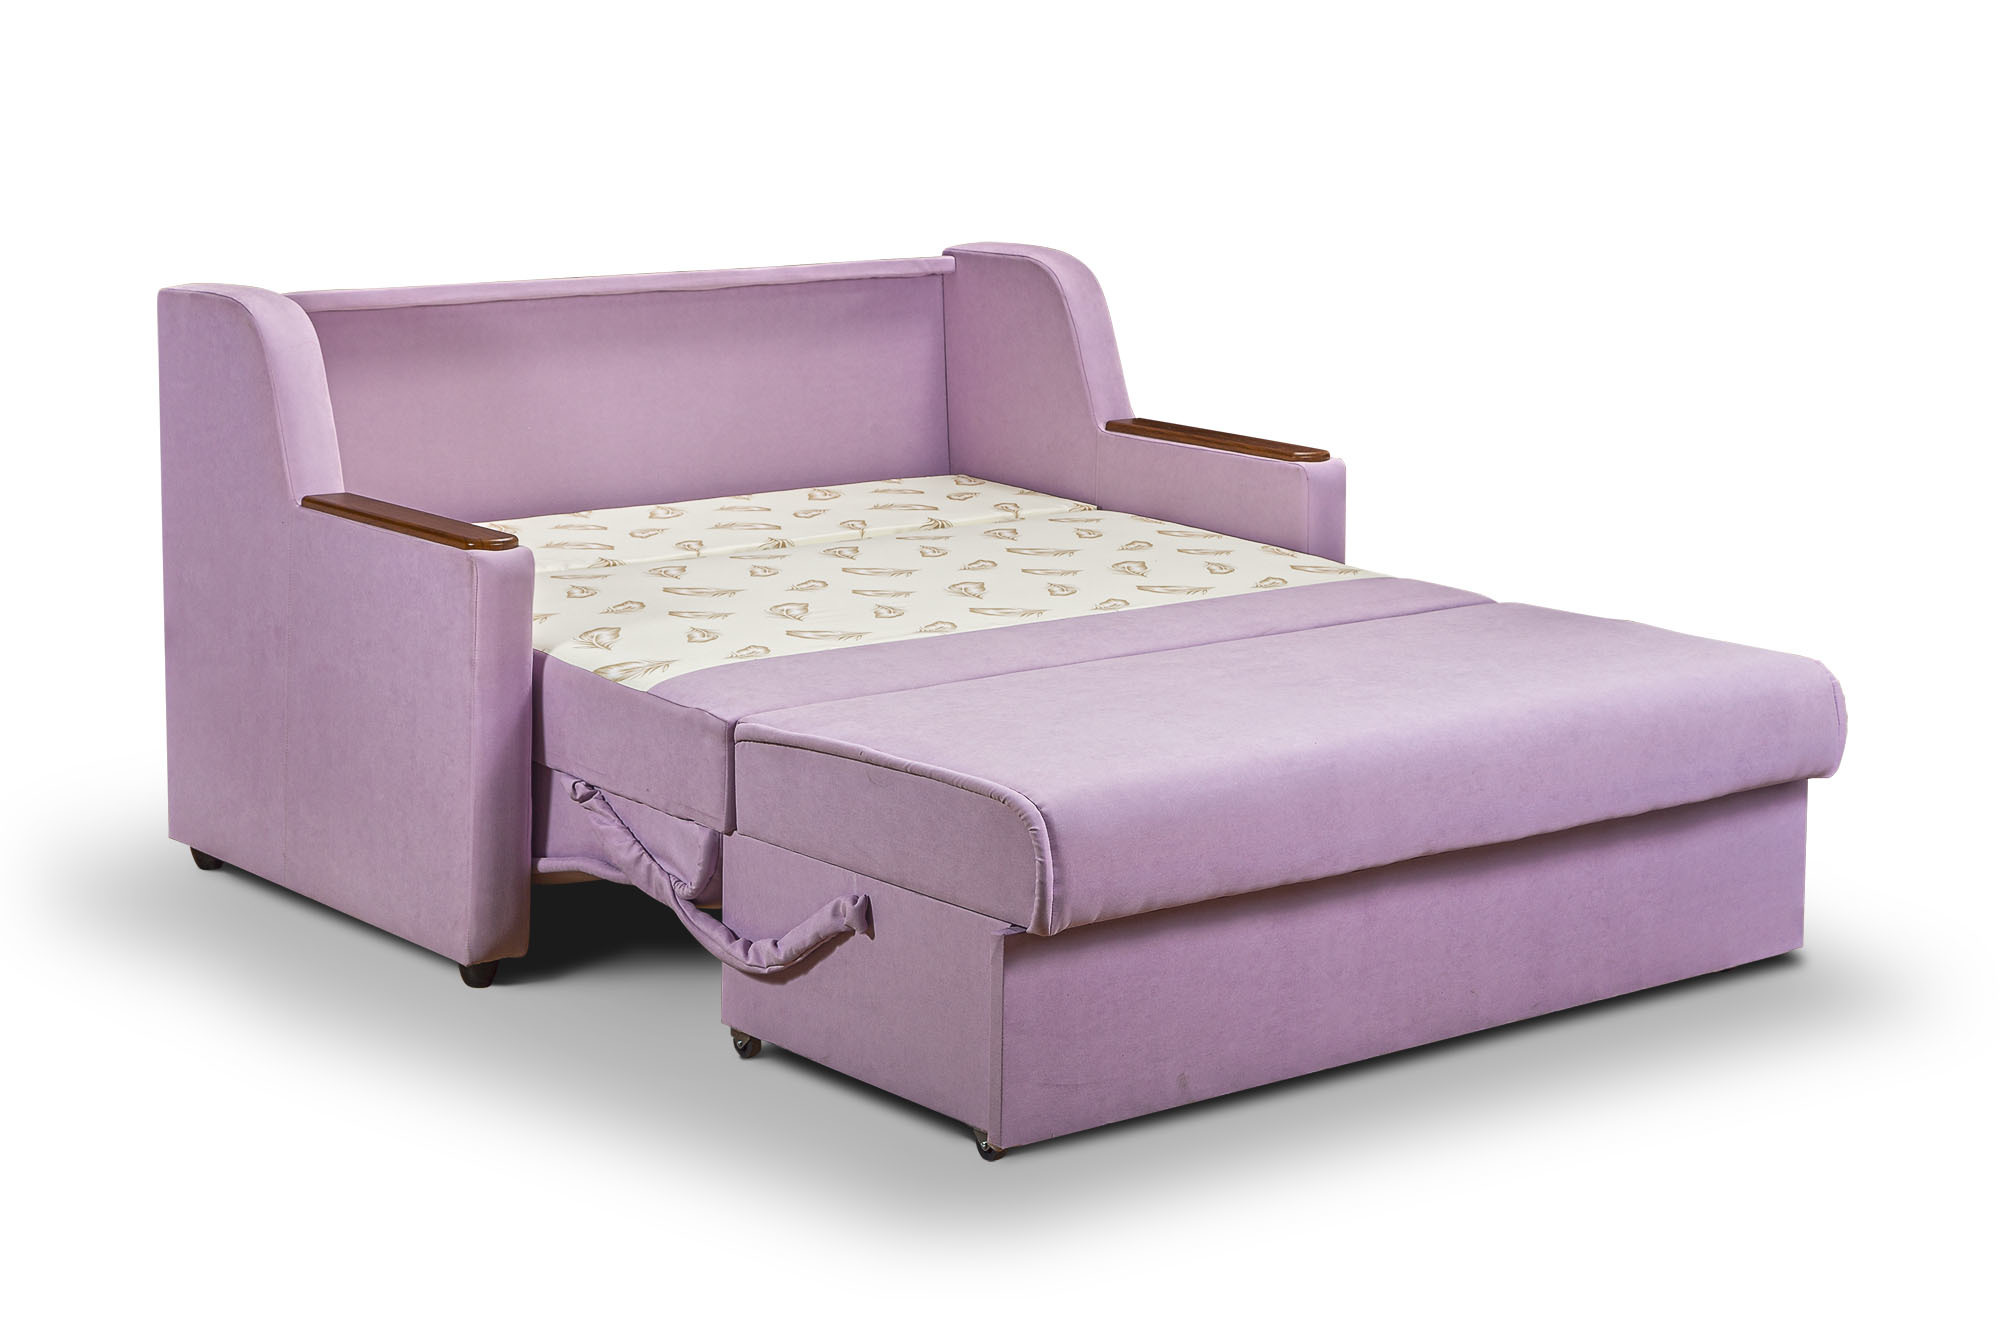 Выкатной диван - комфортное решение для каждого дома